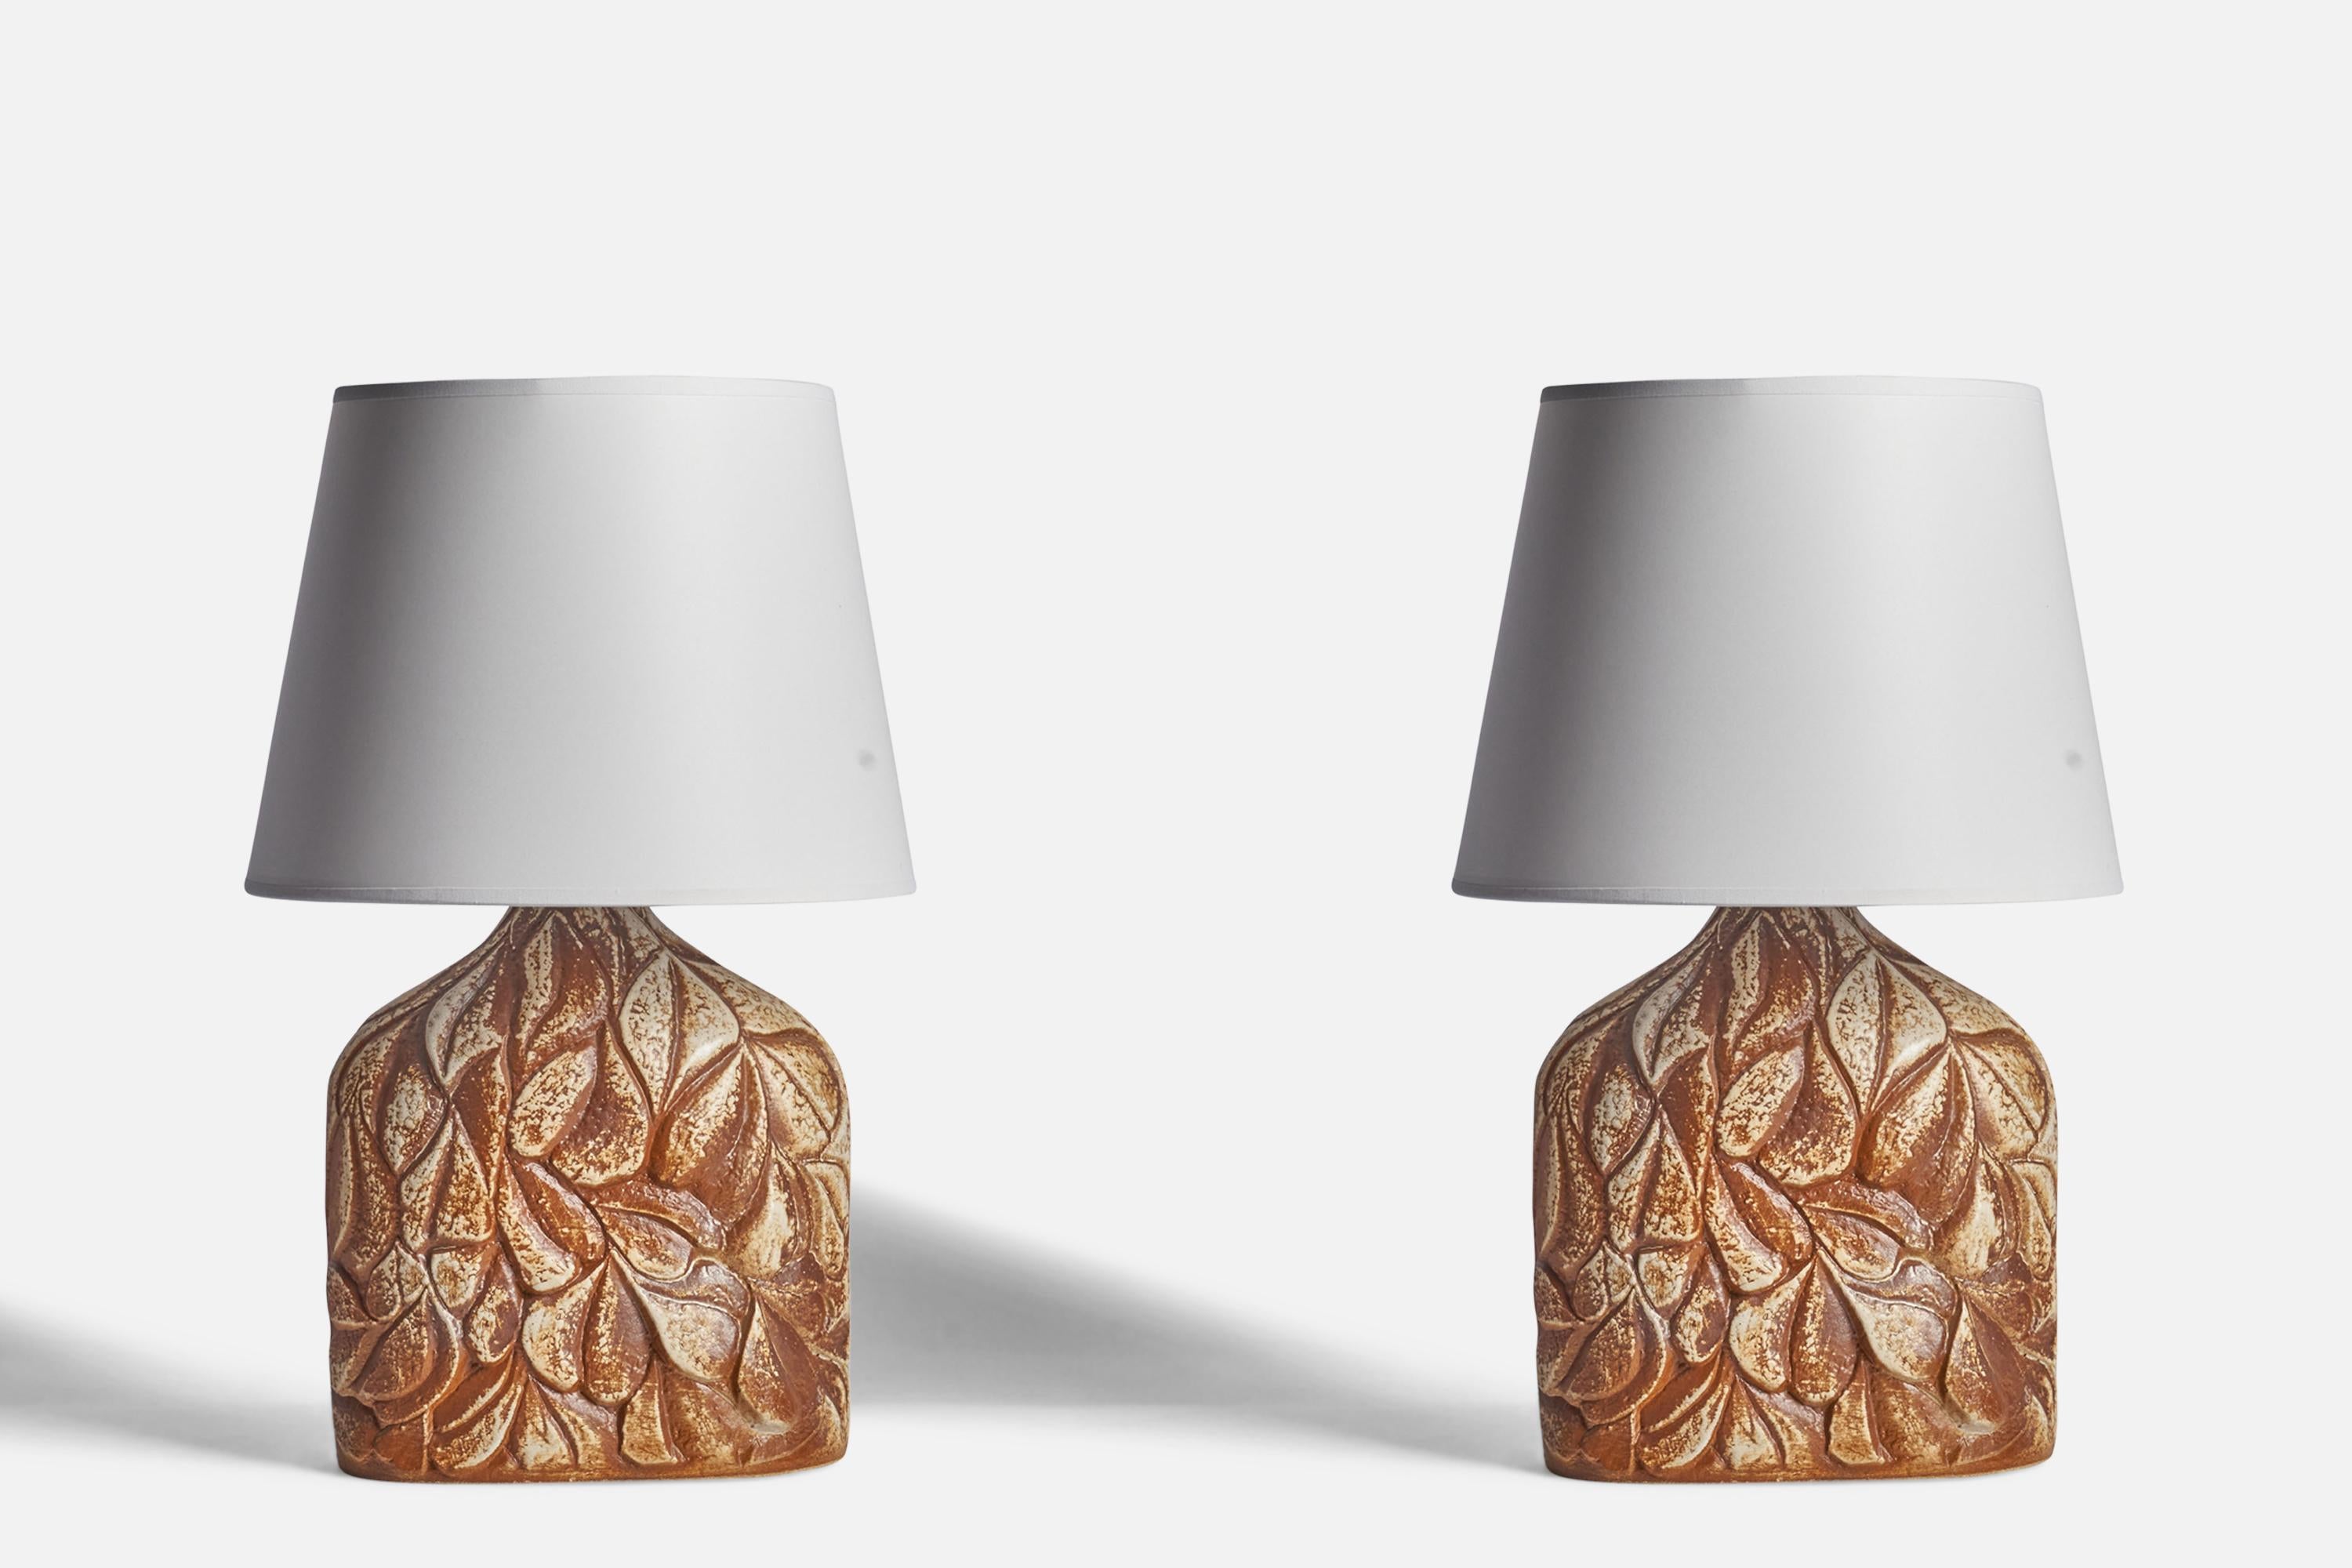 Paire de lampes de table en grès émaillé gris et brun conçues par Haico Nitzsche et produites par Søholm, Danemark, années 1960.

Dimensions de la lampe (pouces) : 14